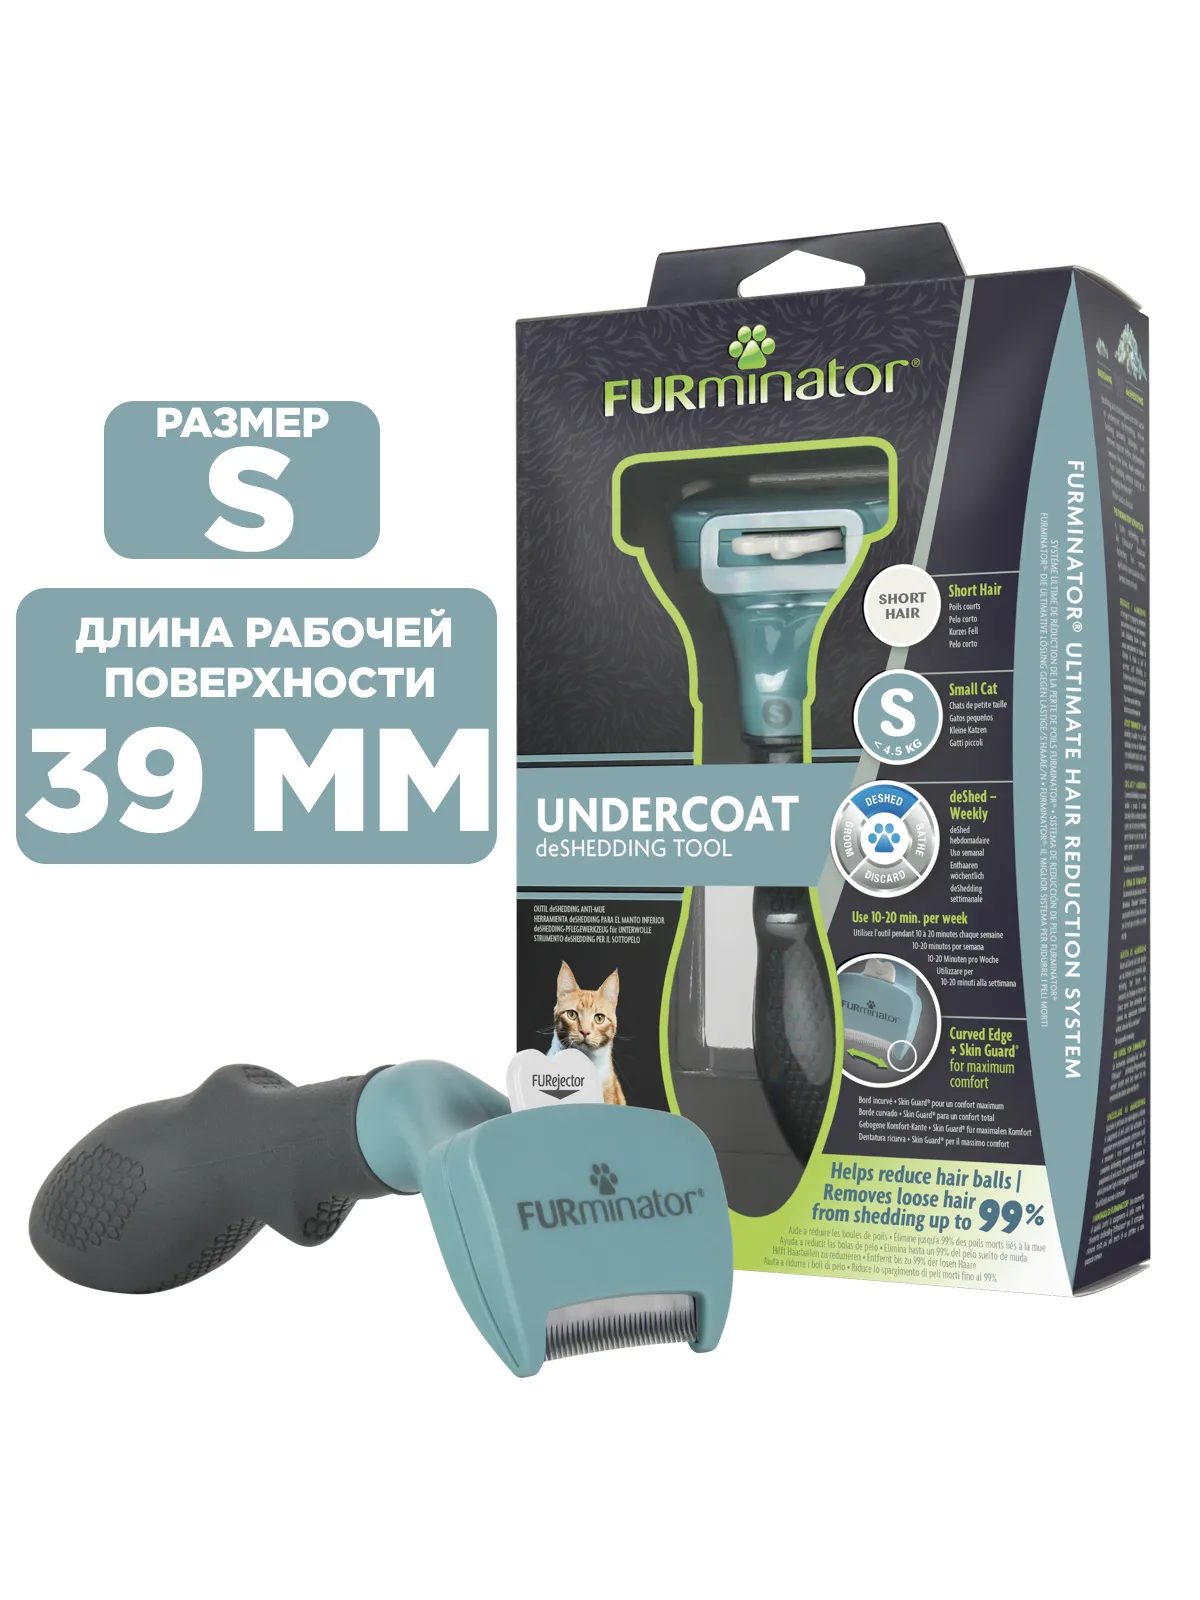 Фурминатор FURminator S для маленьких кошек c короткой шерстью СКИДКА 20%